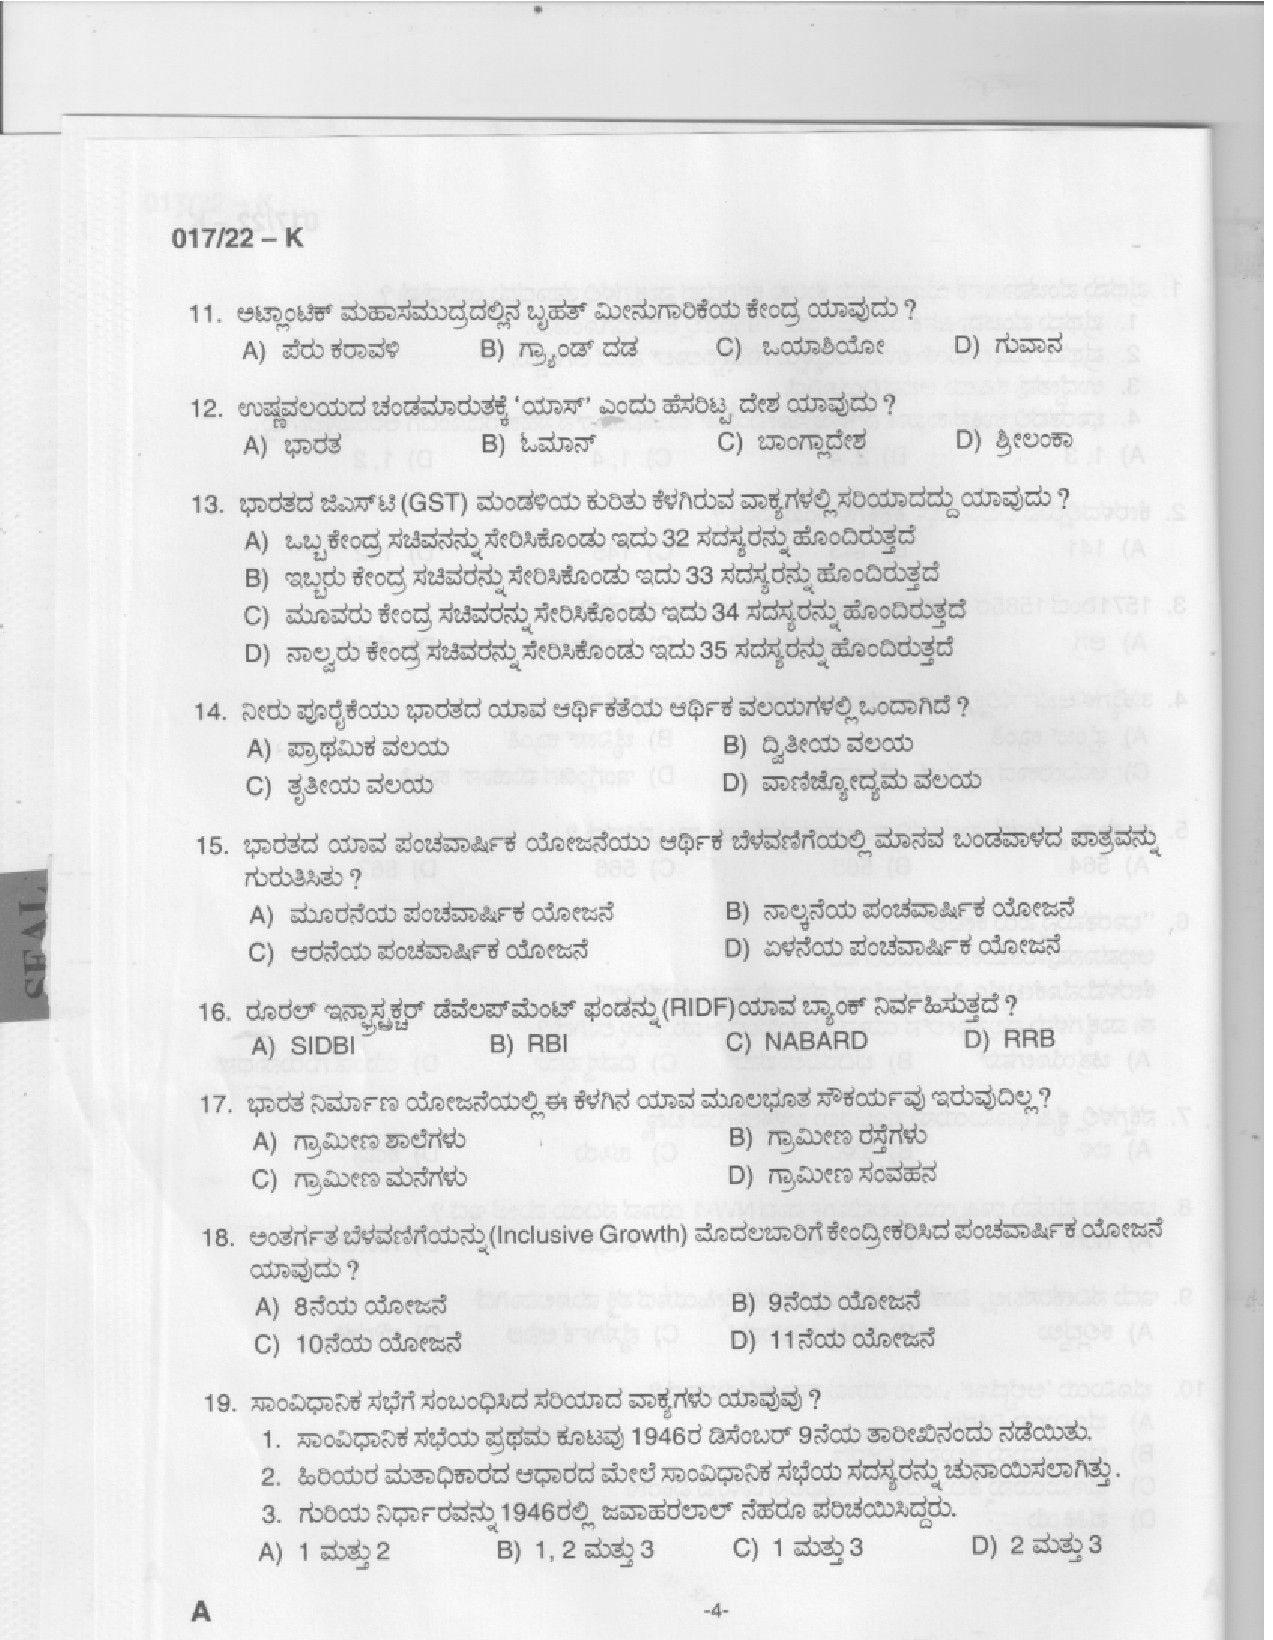 KPSC Police Constable Kannada Exam 2022 Code 0172022 K 2